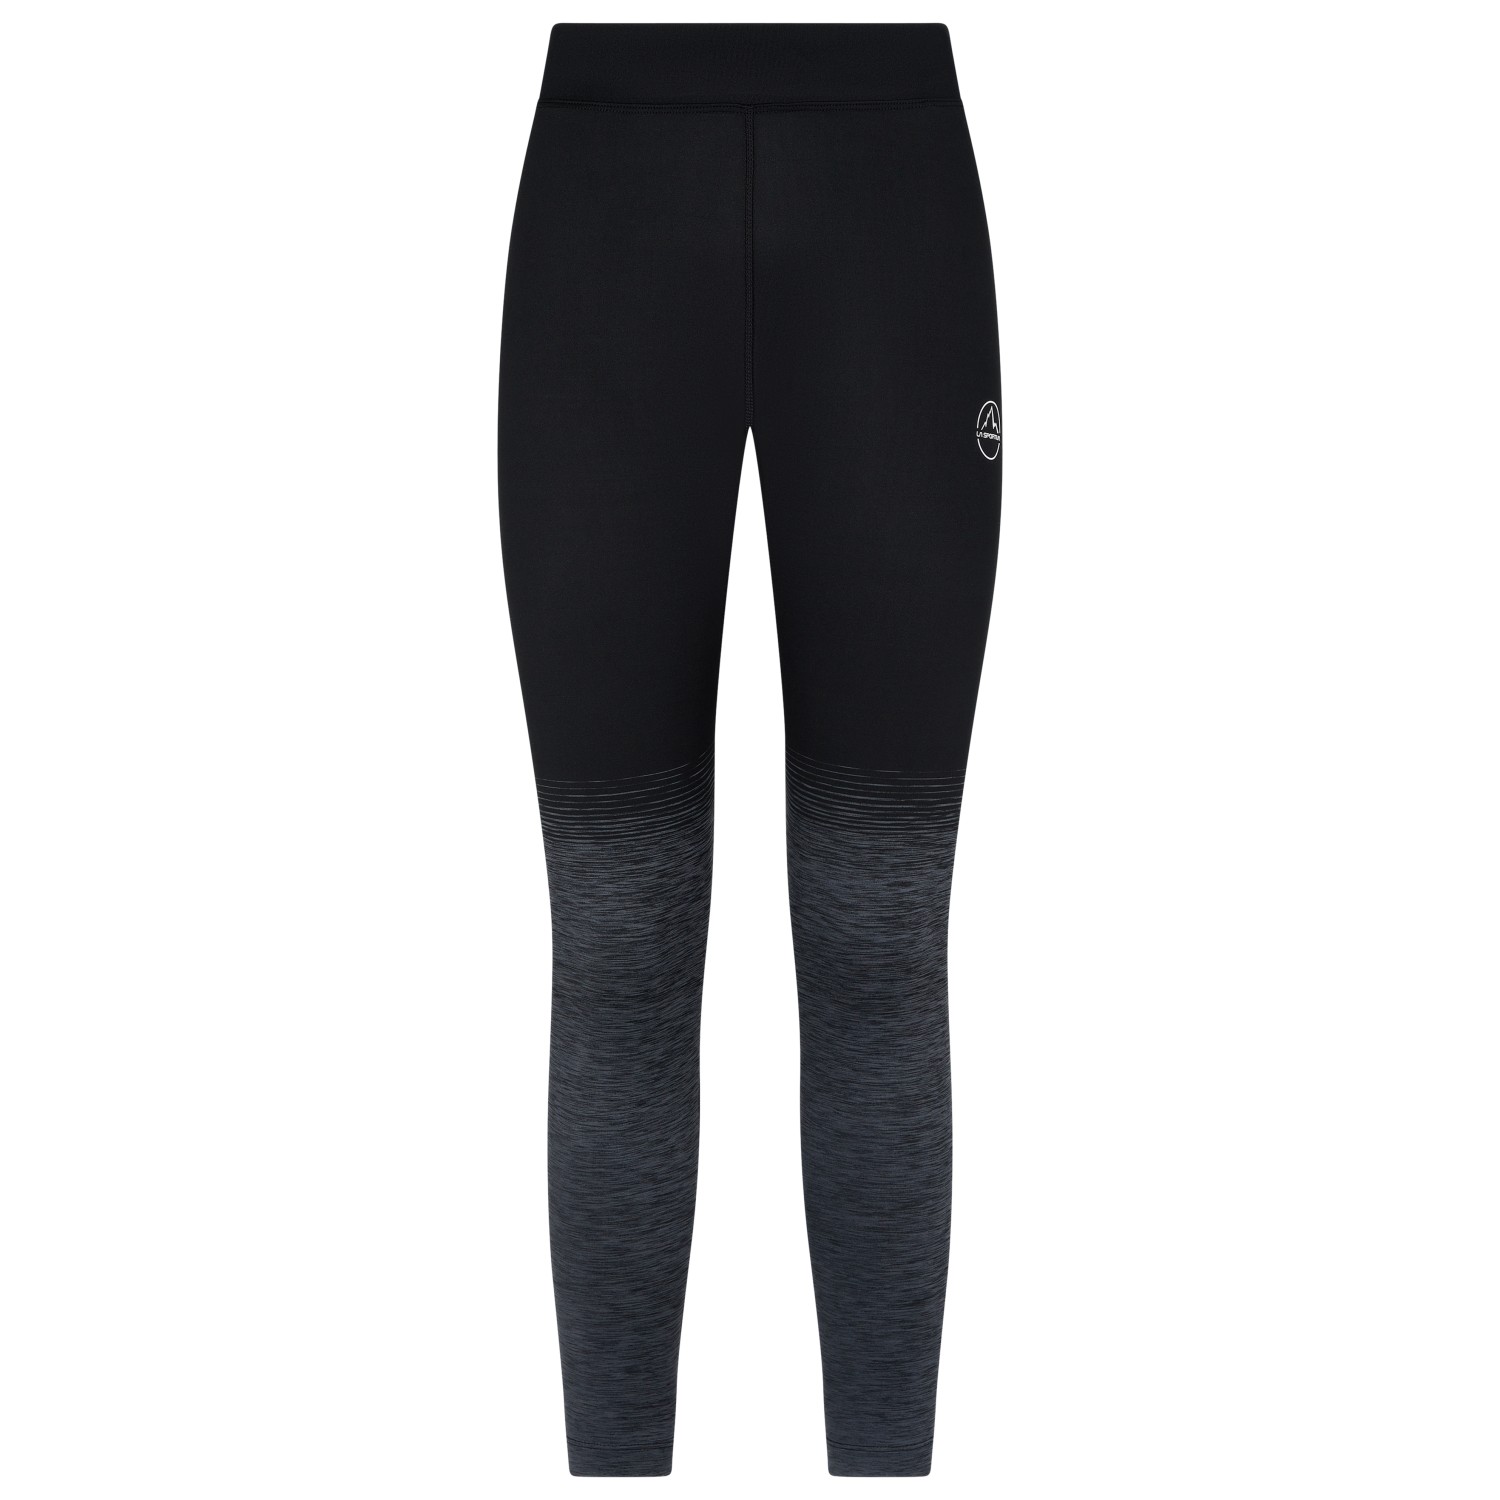 Альпинистские штаны La Sportiva Women's Patcha Leggings, цвет Black/Carbon